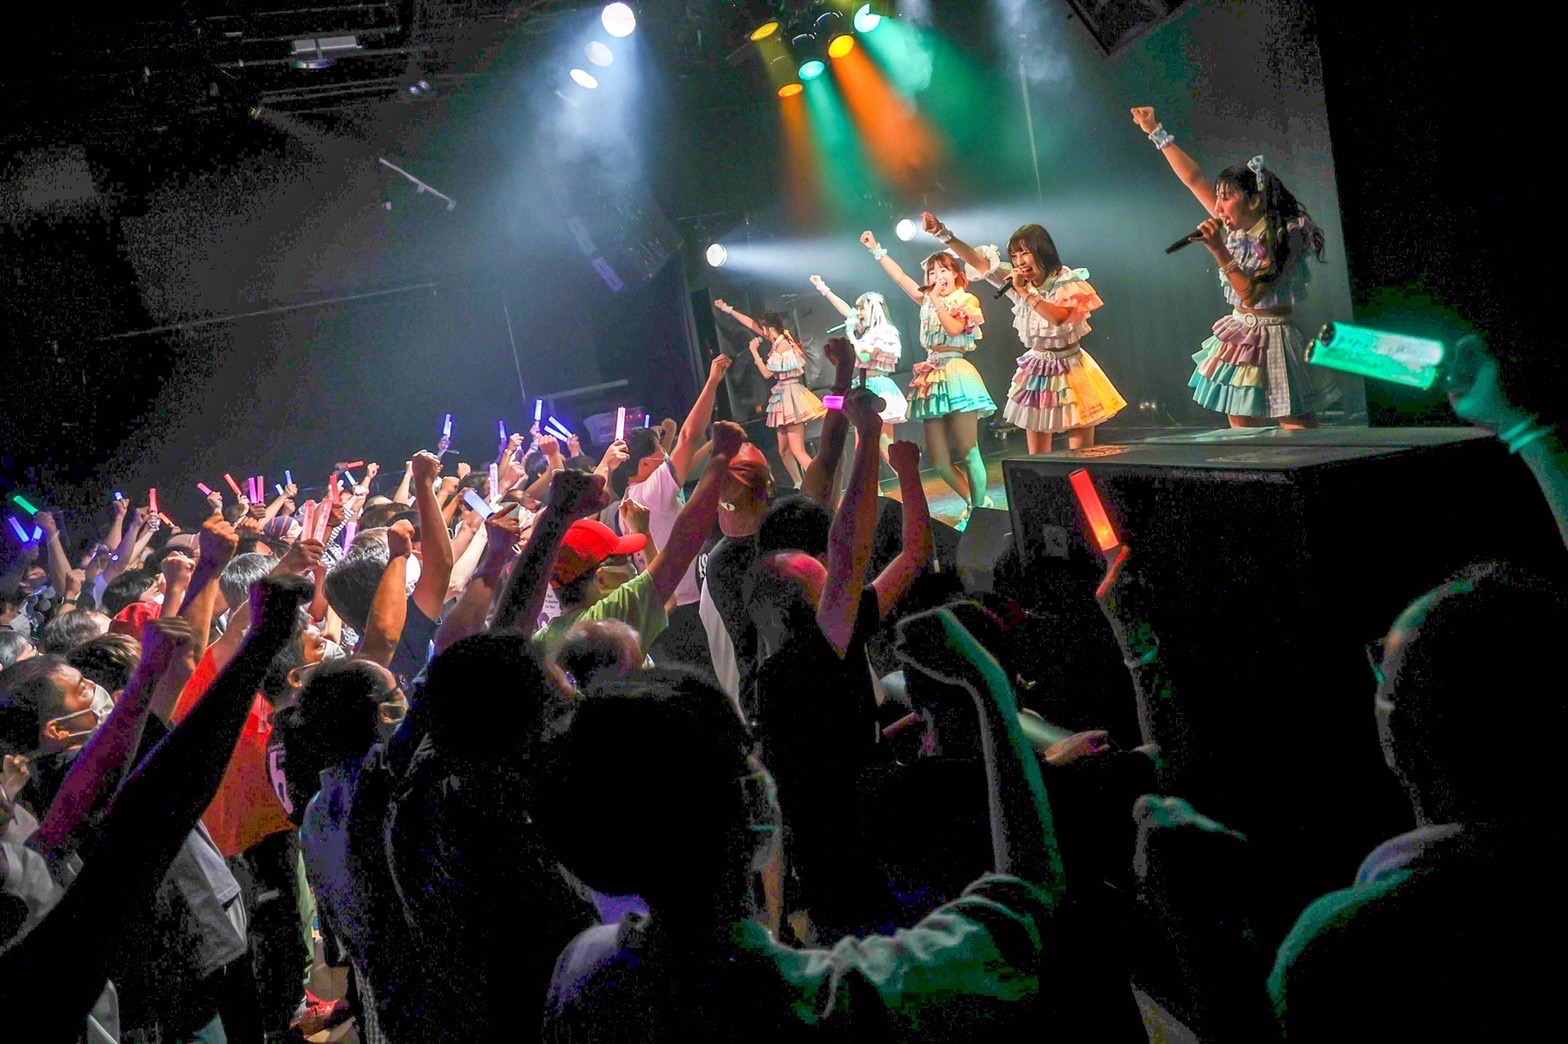 マジカル・パンチライン主催イベント “マジフェス” 勢いのあるアイドルグループを招いて 2 デイズ開催 9/24 から全国 5 都市にてハロウィンツアー開催！：マジカル・パンチライン